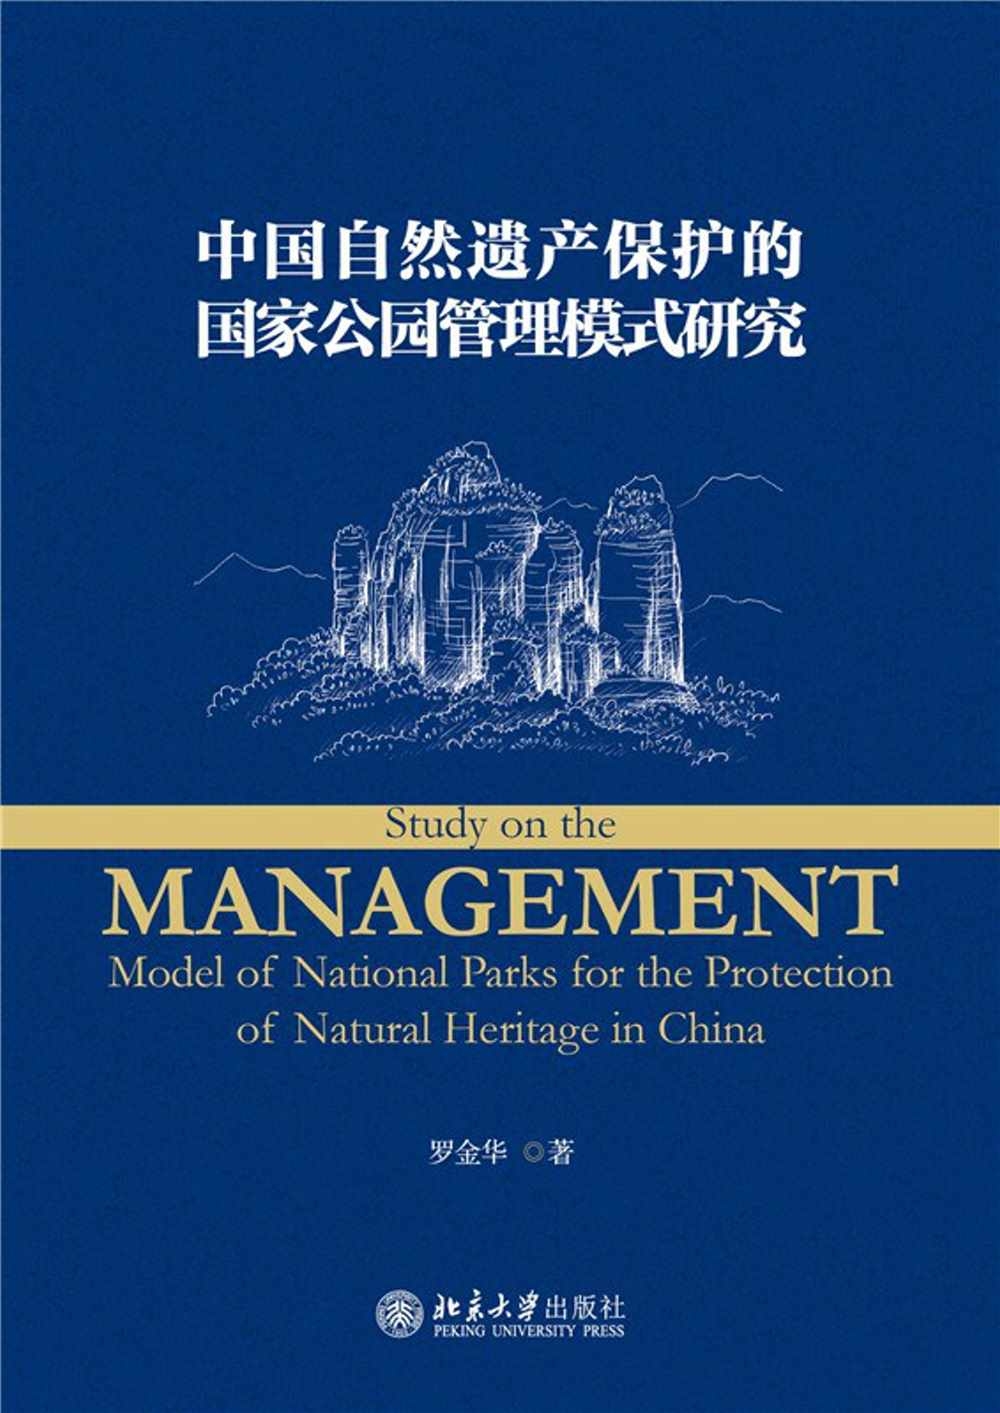 中國自然遺產保護的國家公園管理模式研究